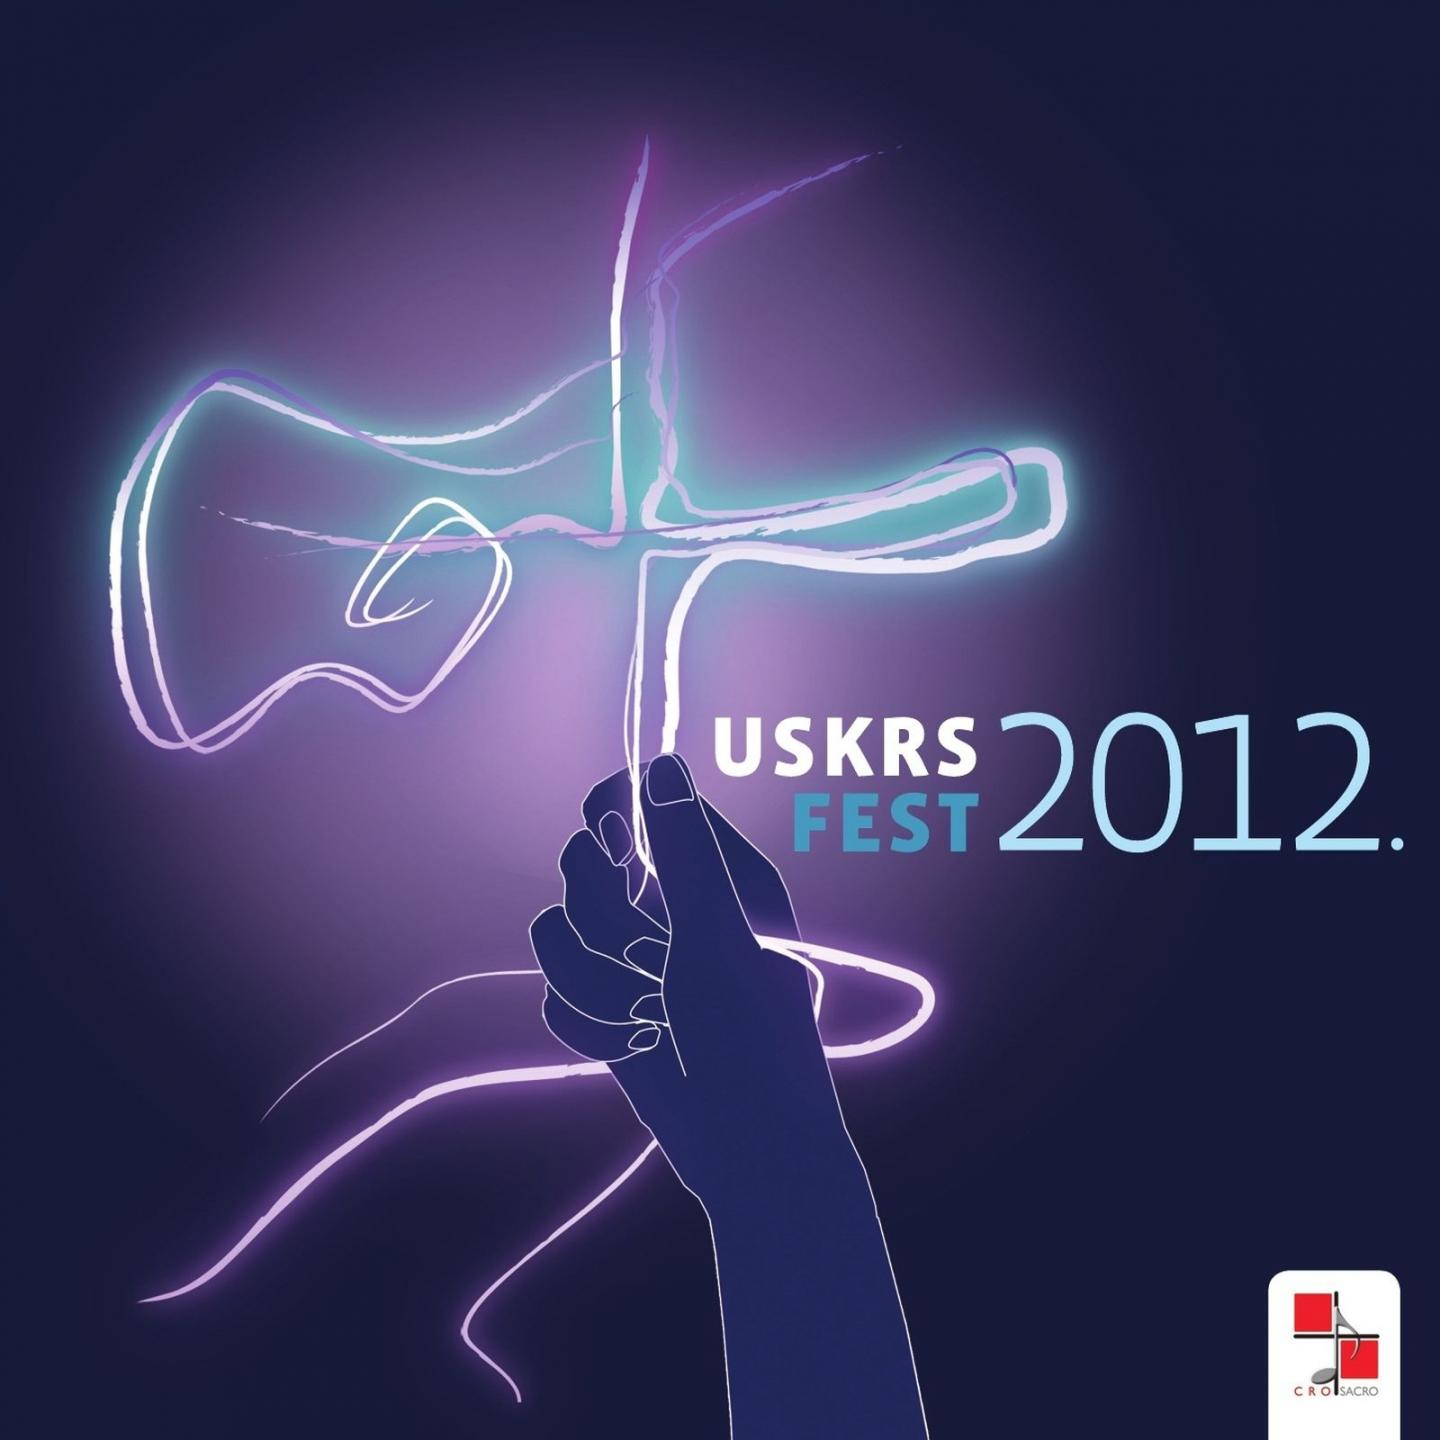 Uskrs Fest 2012